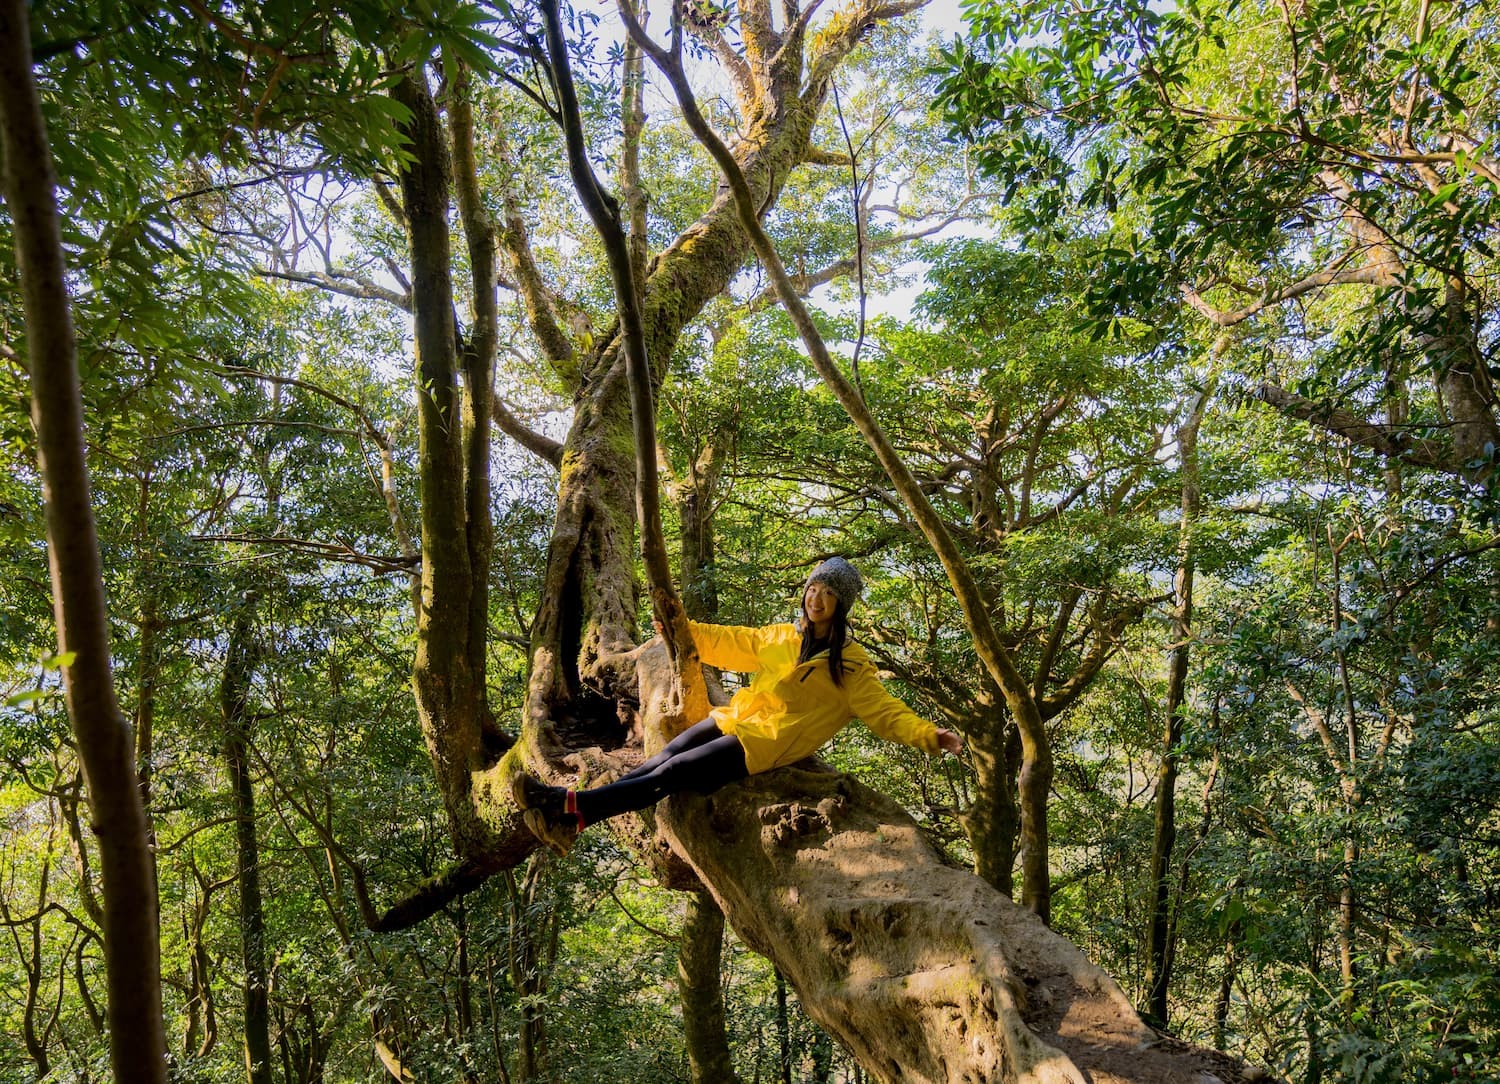 新竹北得拉曼巨木步道一日游 | 童话森林